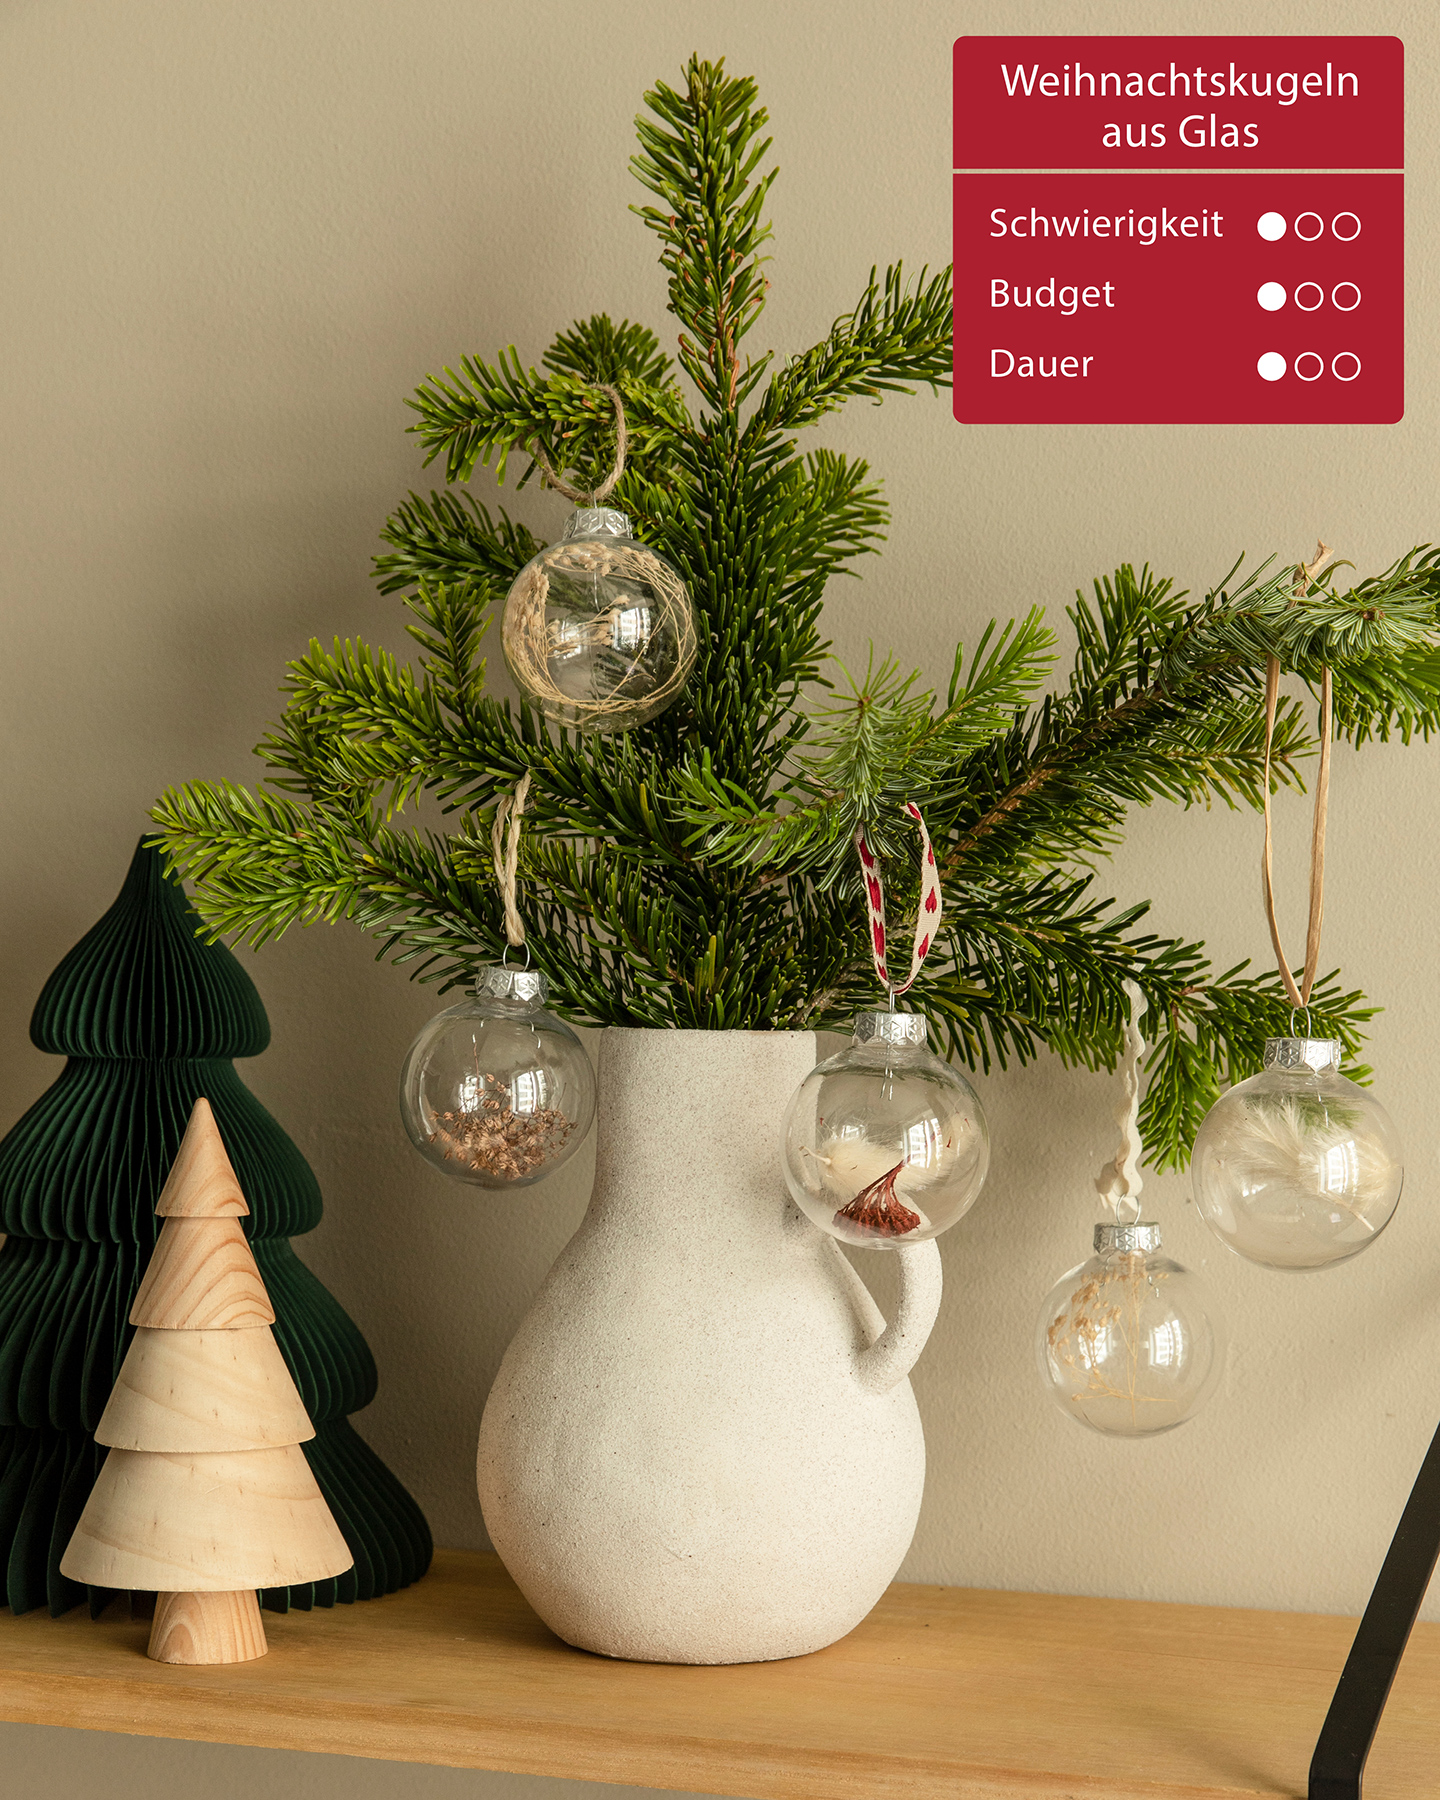 DIY-Weihnachtsbaumschmuck hängt an einem grünen Tannezweig.